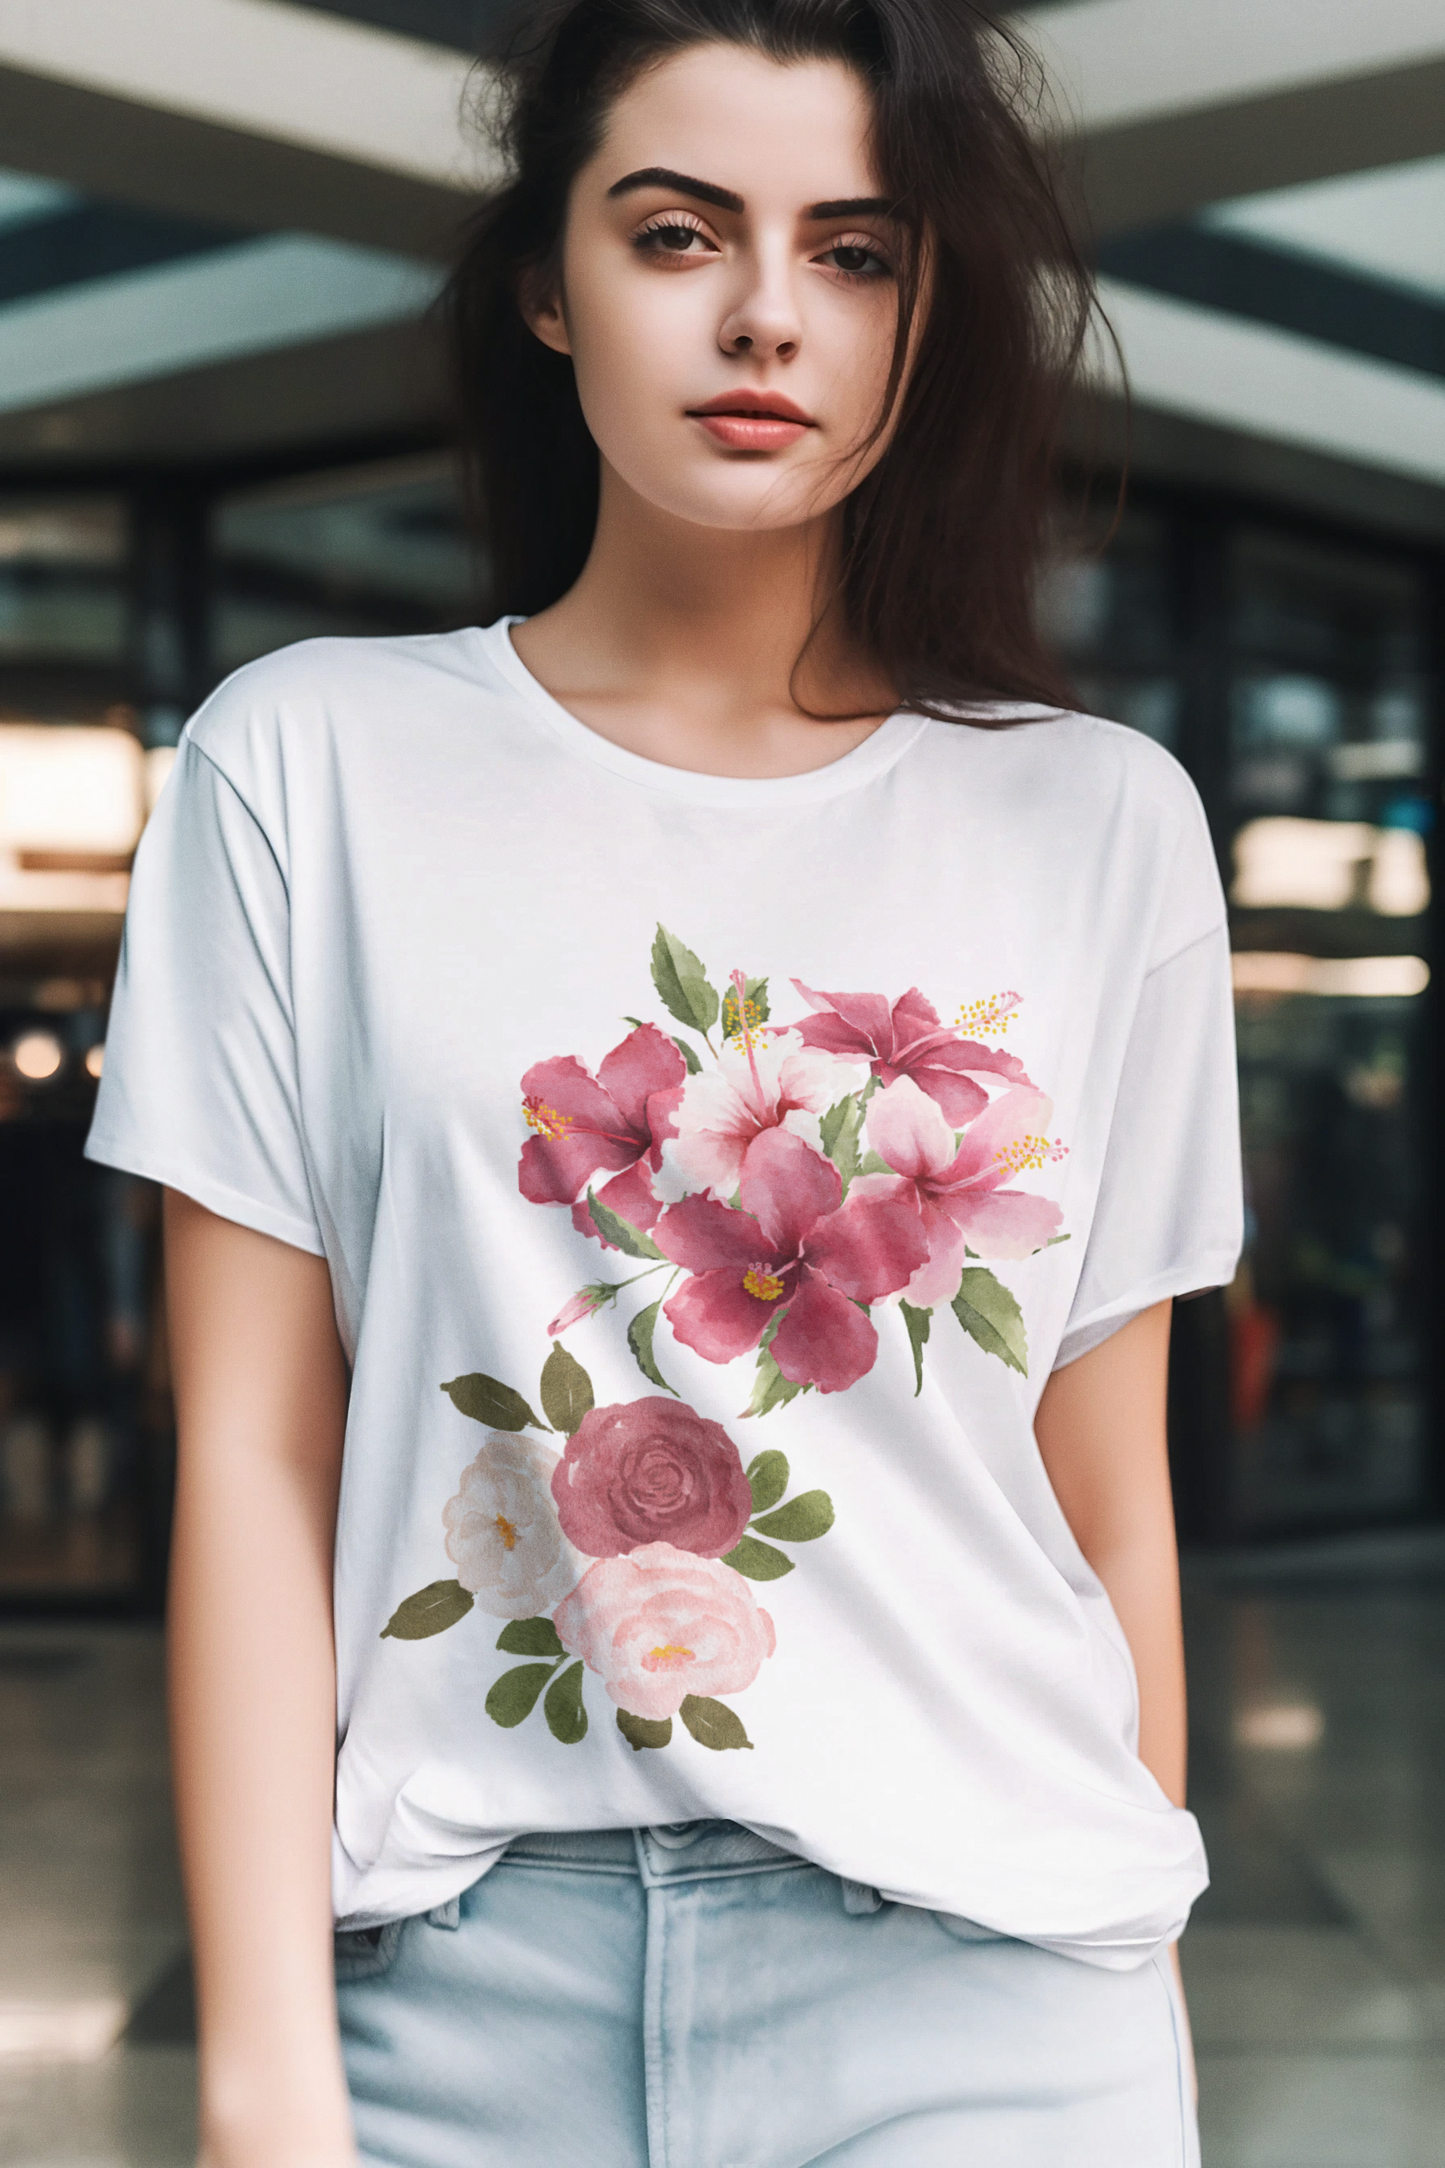 floral arrangement　t-shirt